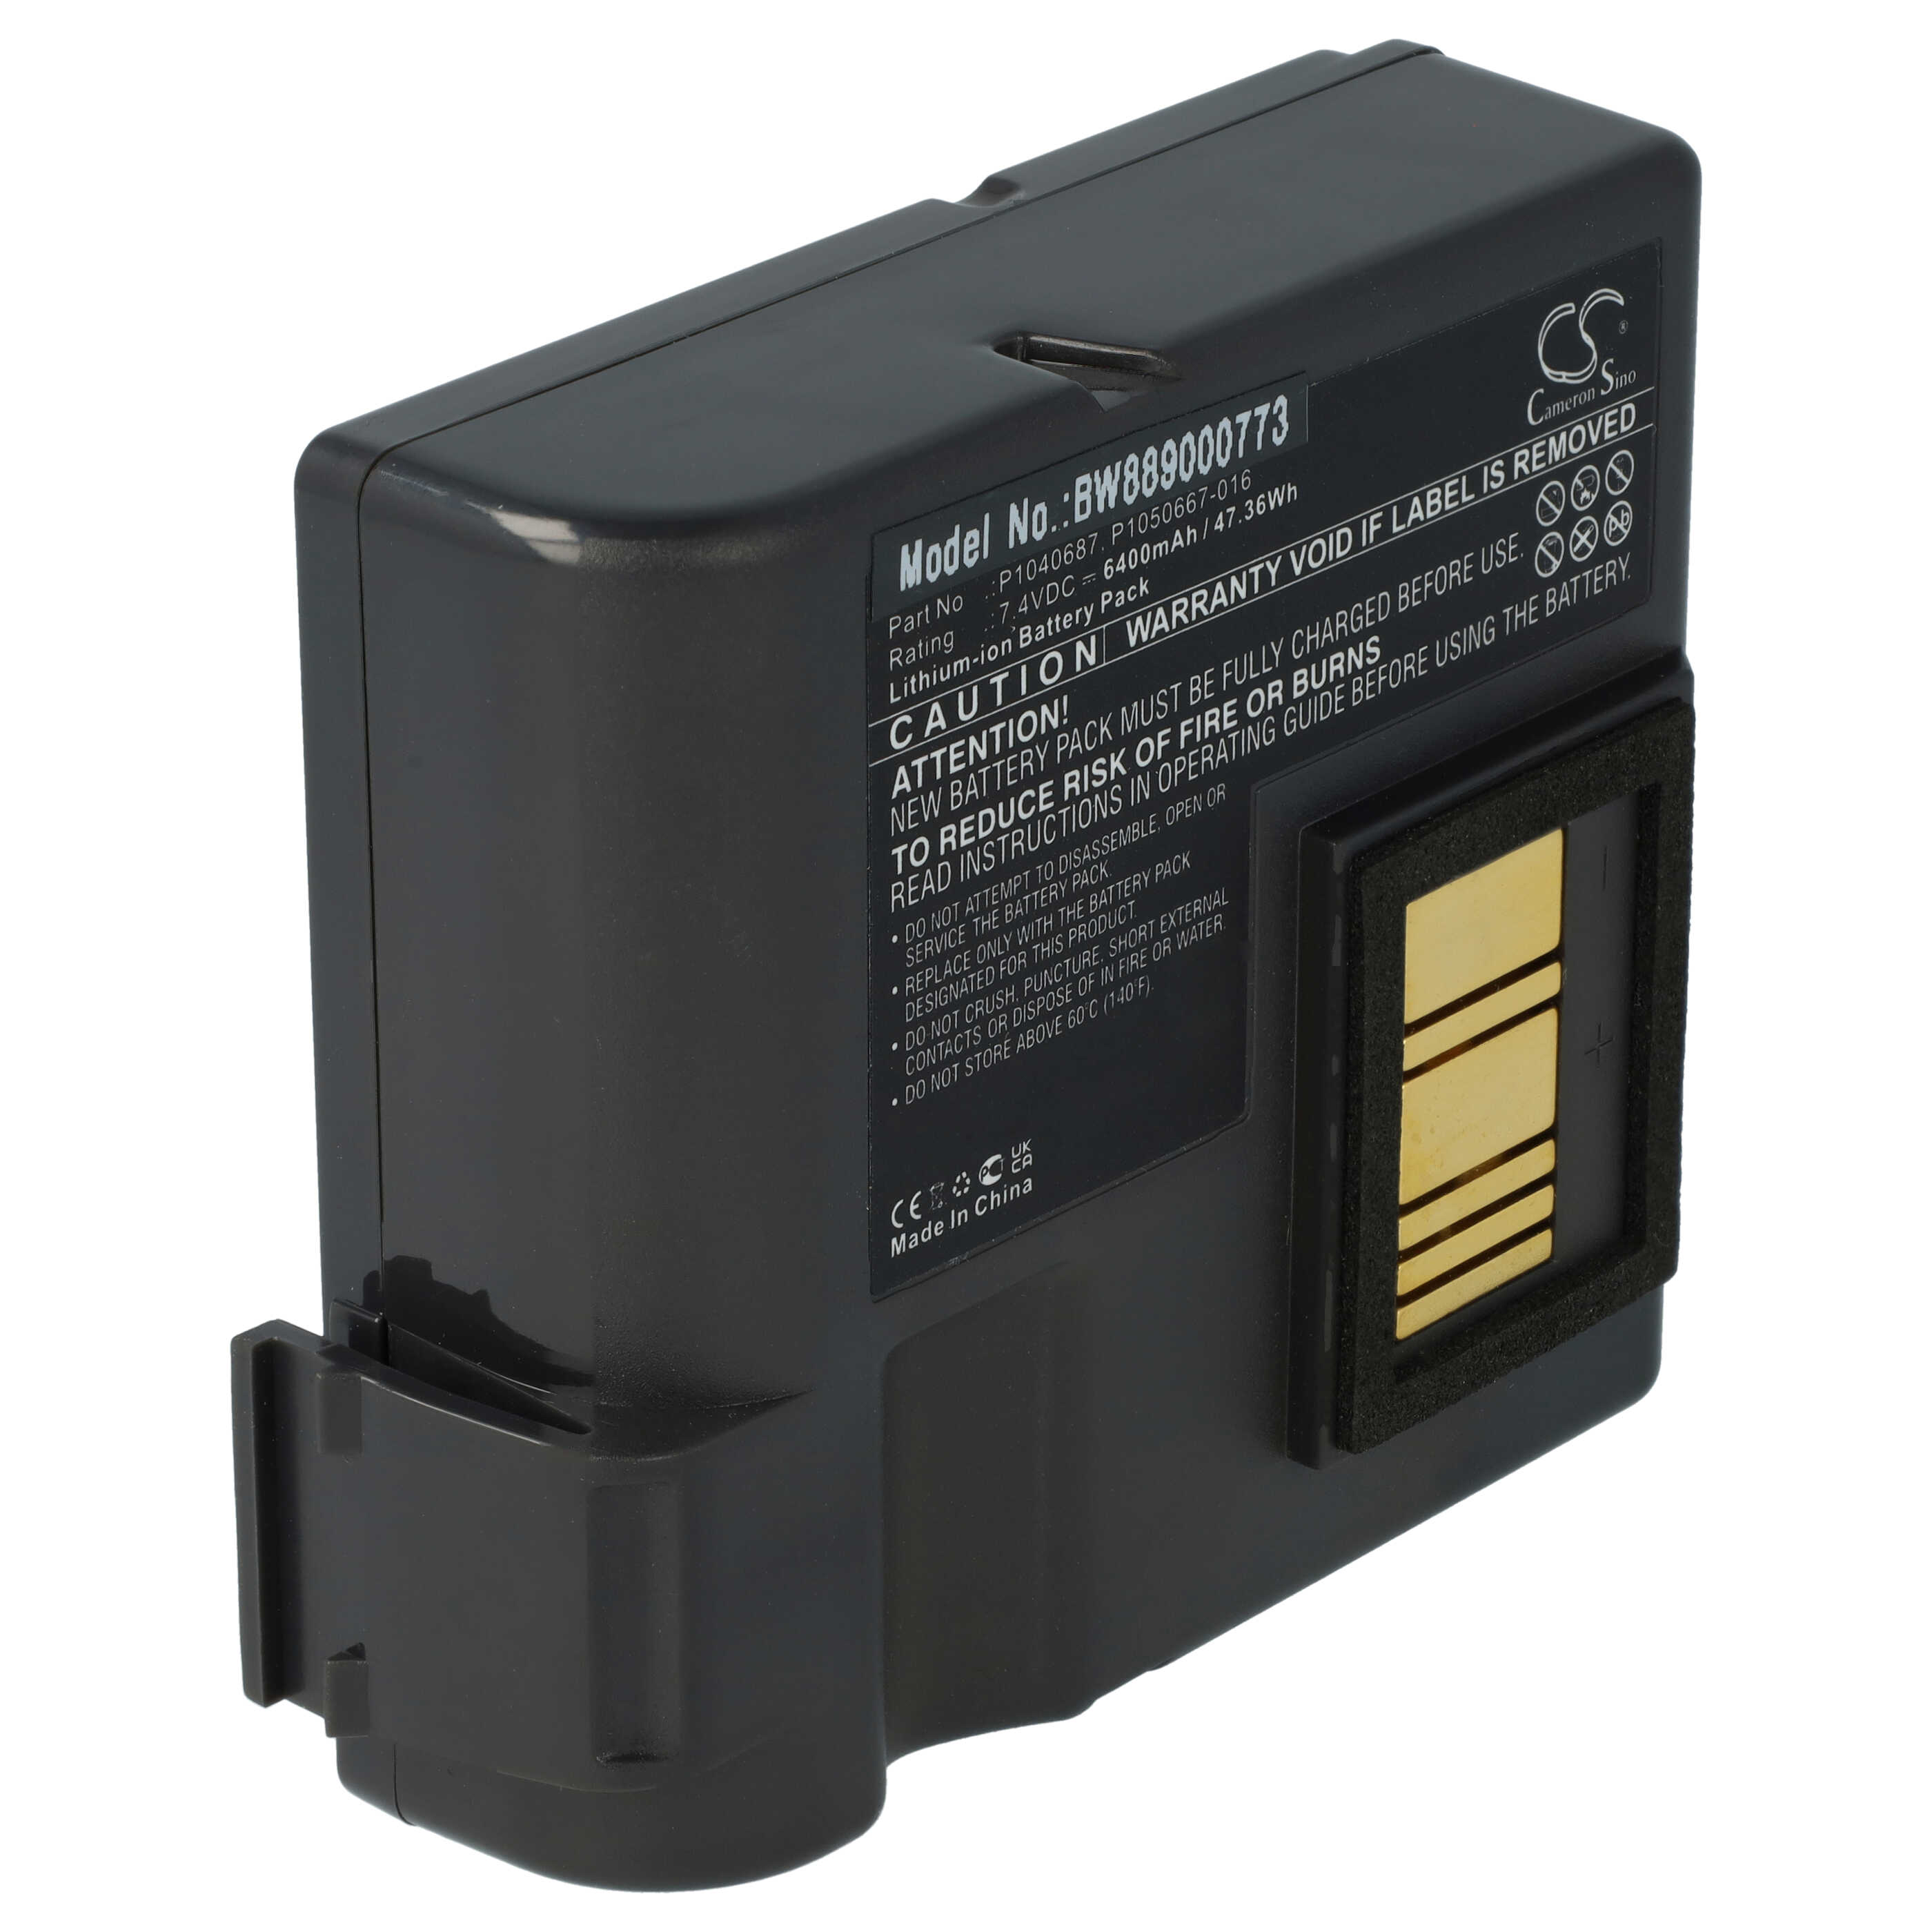 Batterie remplace Zebra P1050667-016, BTRY-MPP-68MA1-01, P1040687 pour imprimante - 6400mAh 7,4V Li-ion